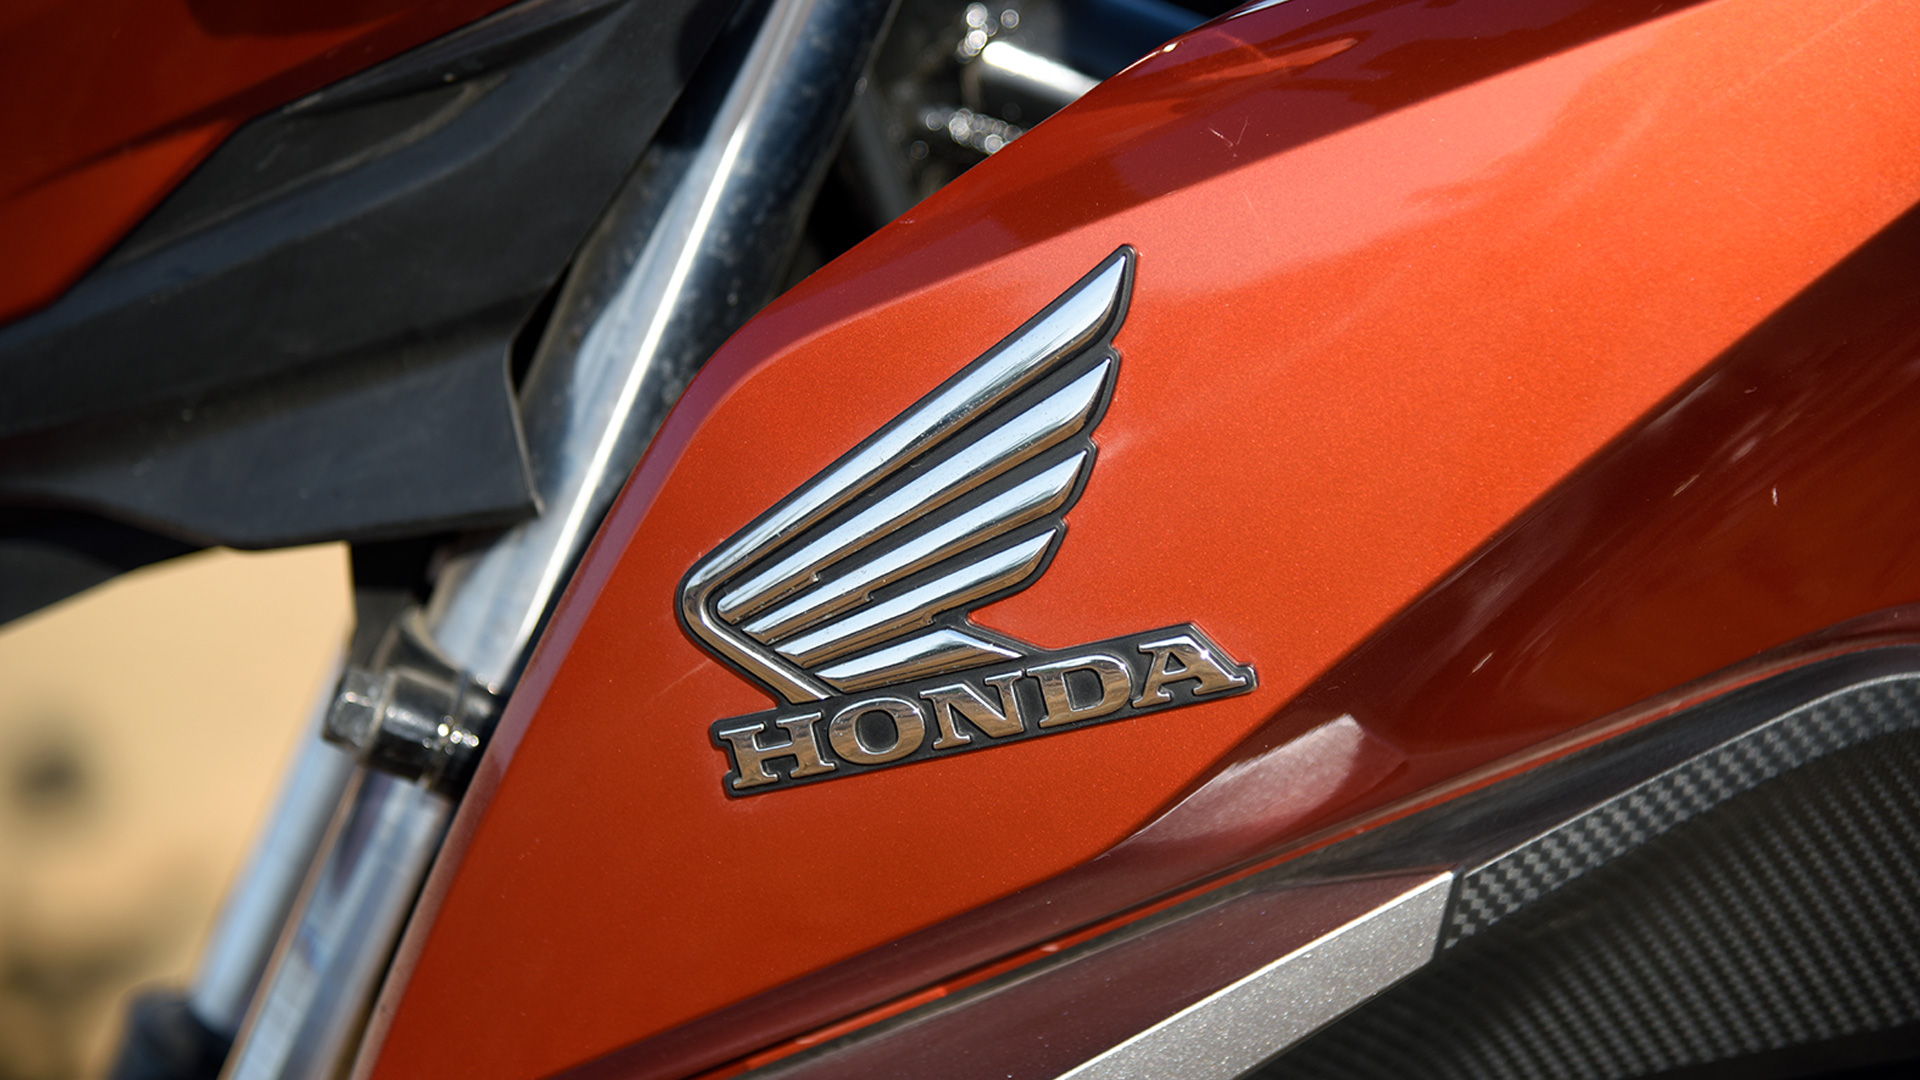 Honda CB Hornet 160R 2016 CBS